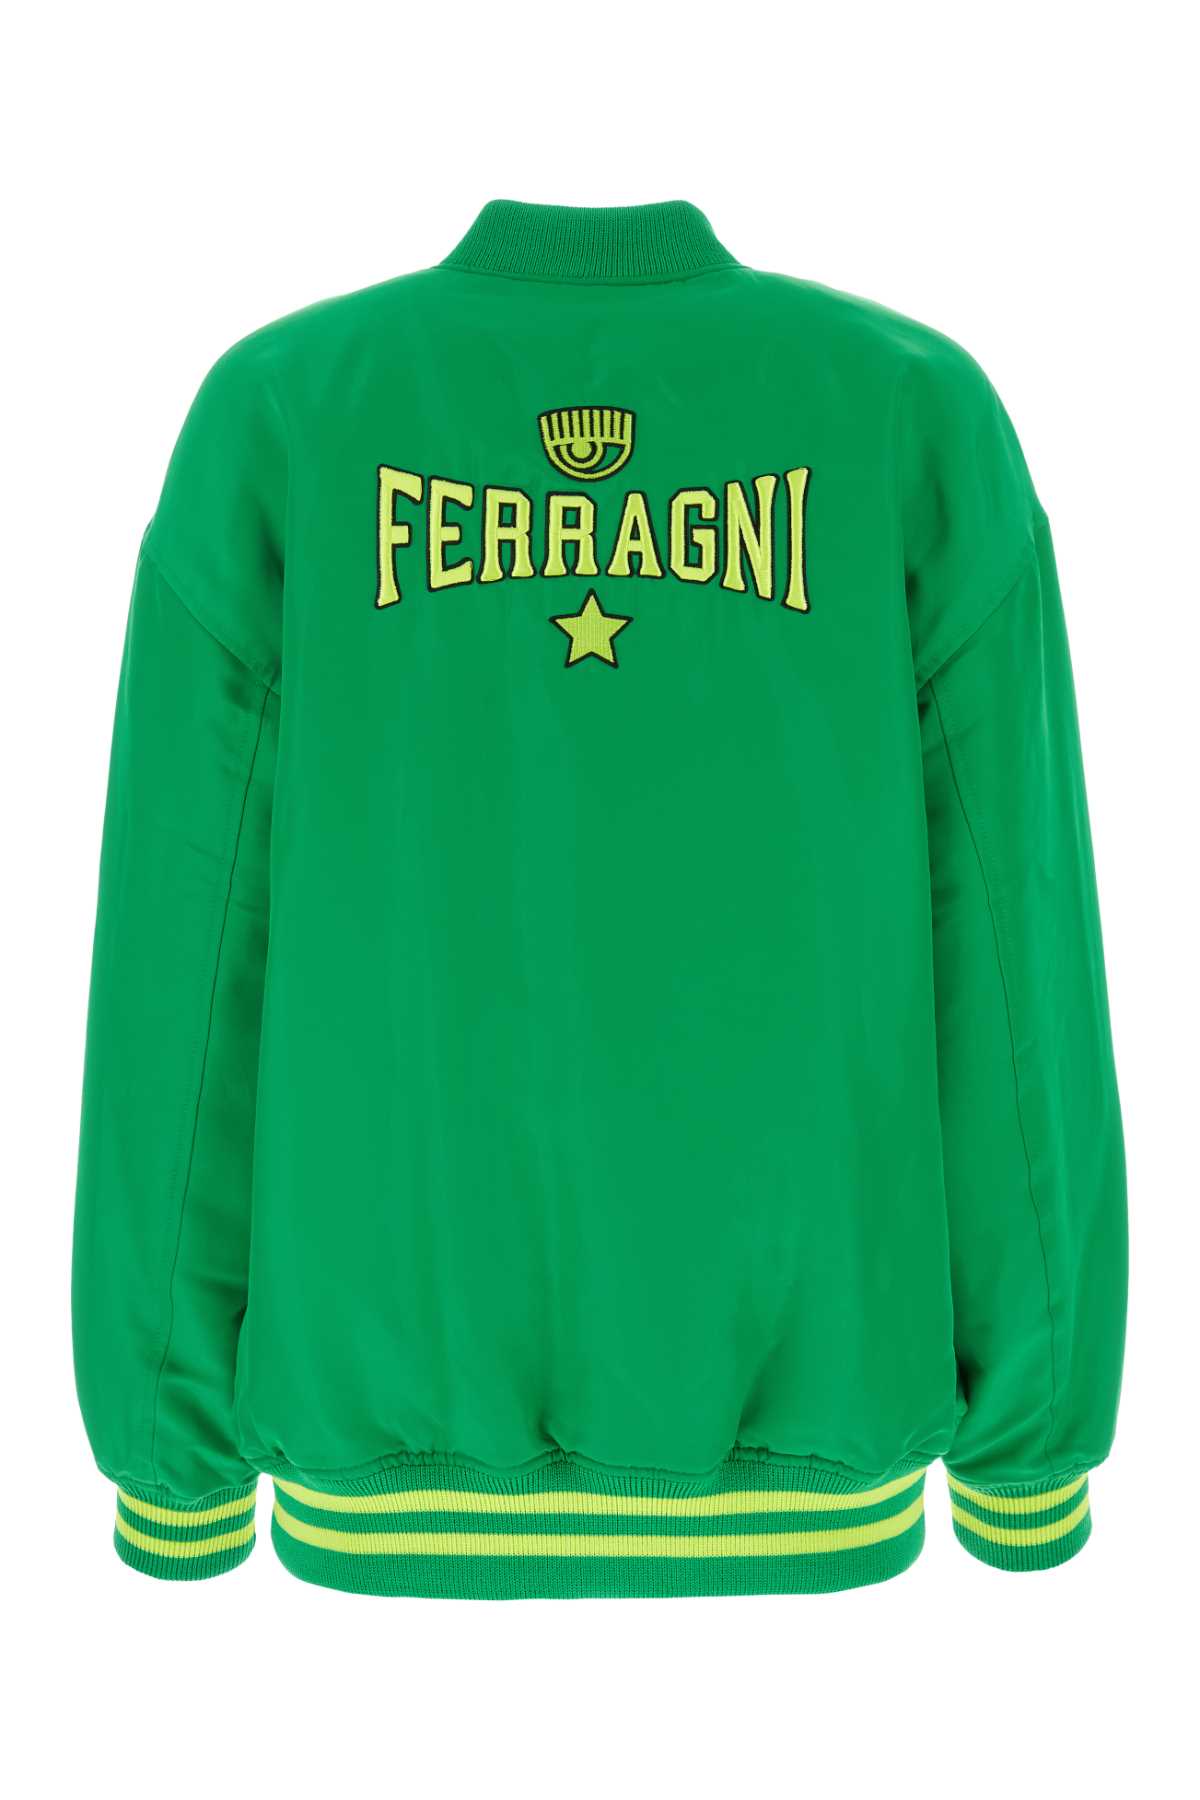 Shop Chiara Ferragni Grass Green Twill Bomber Jacket